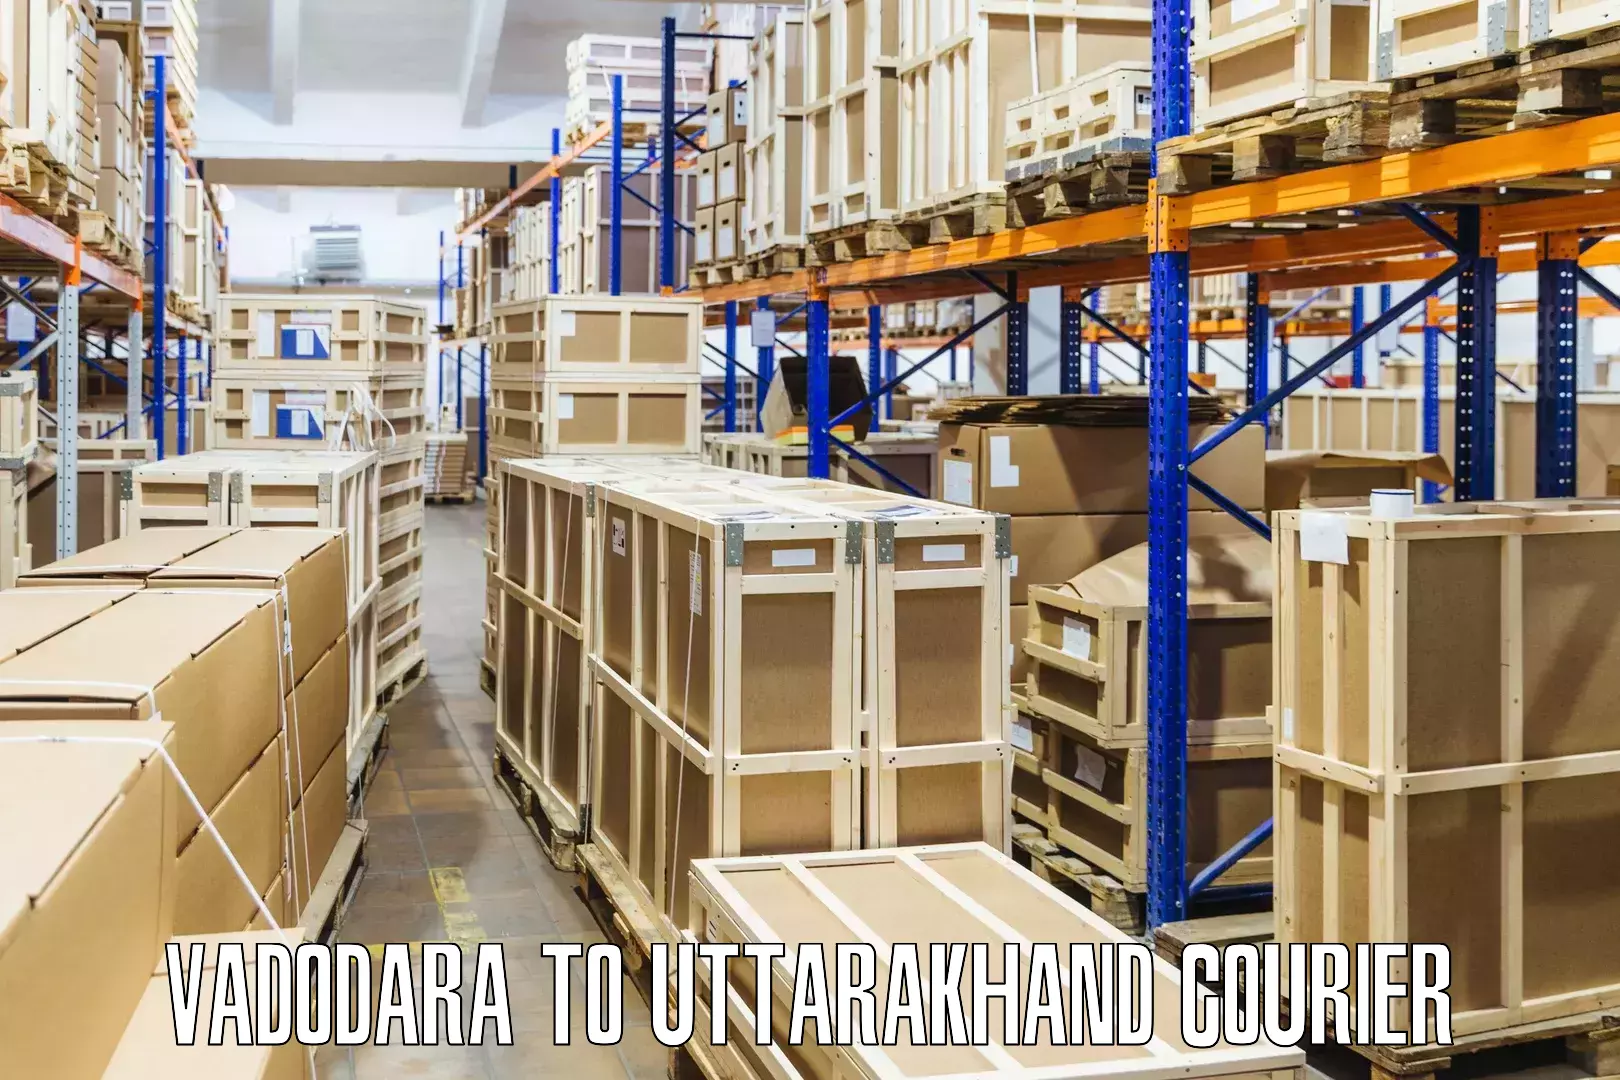 Courier insurance in Vadodara to Kotdwara